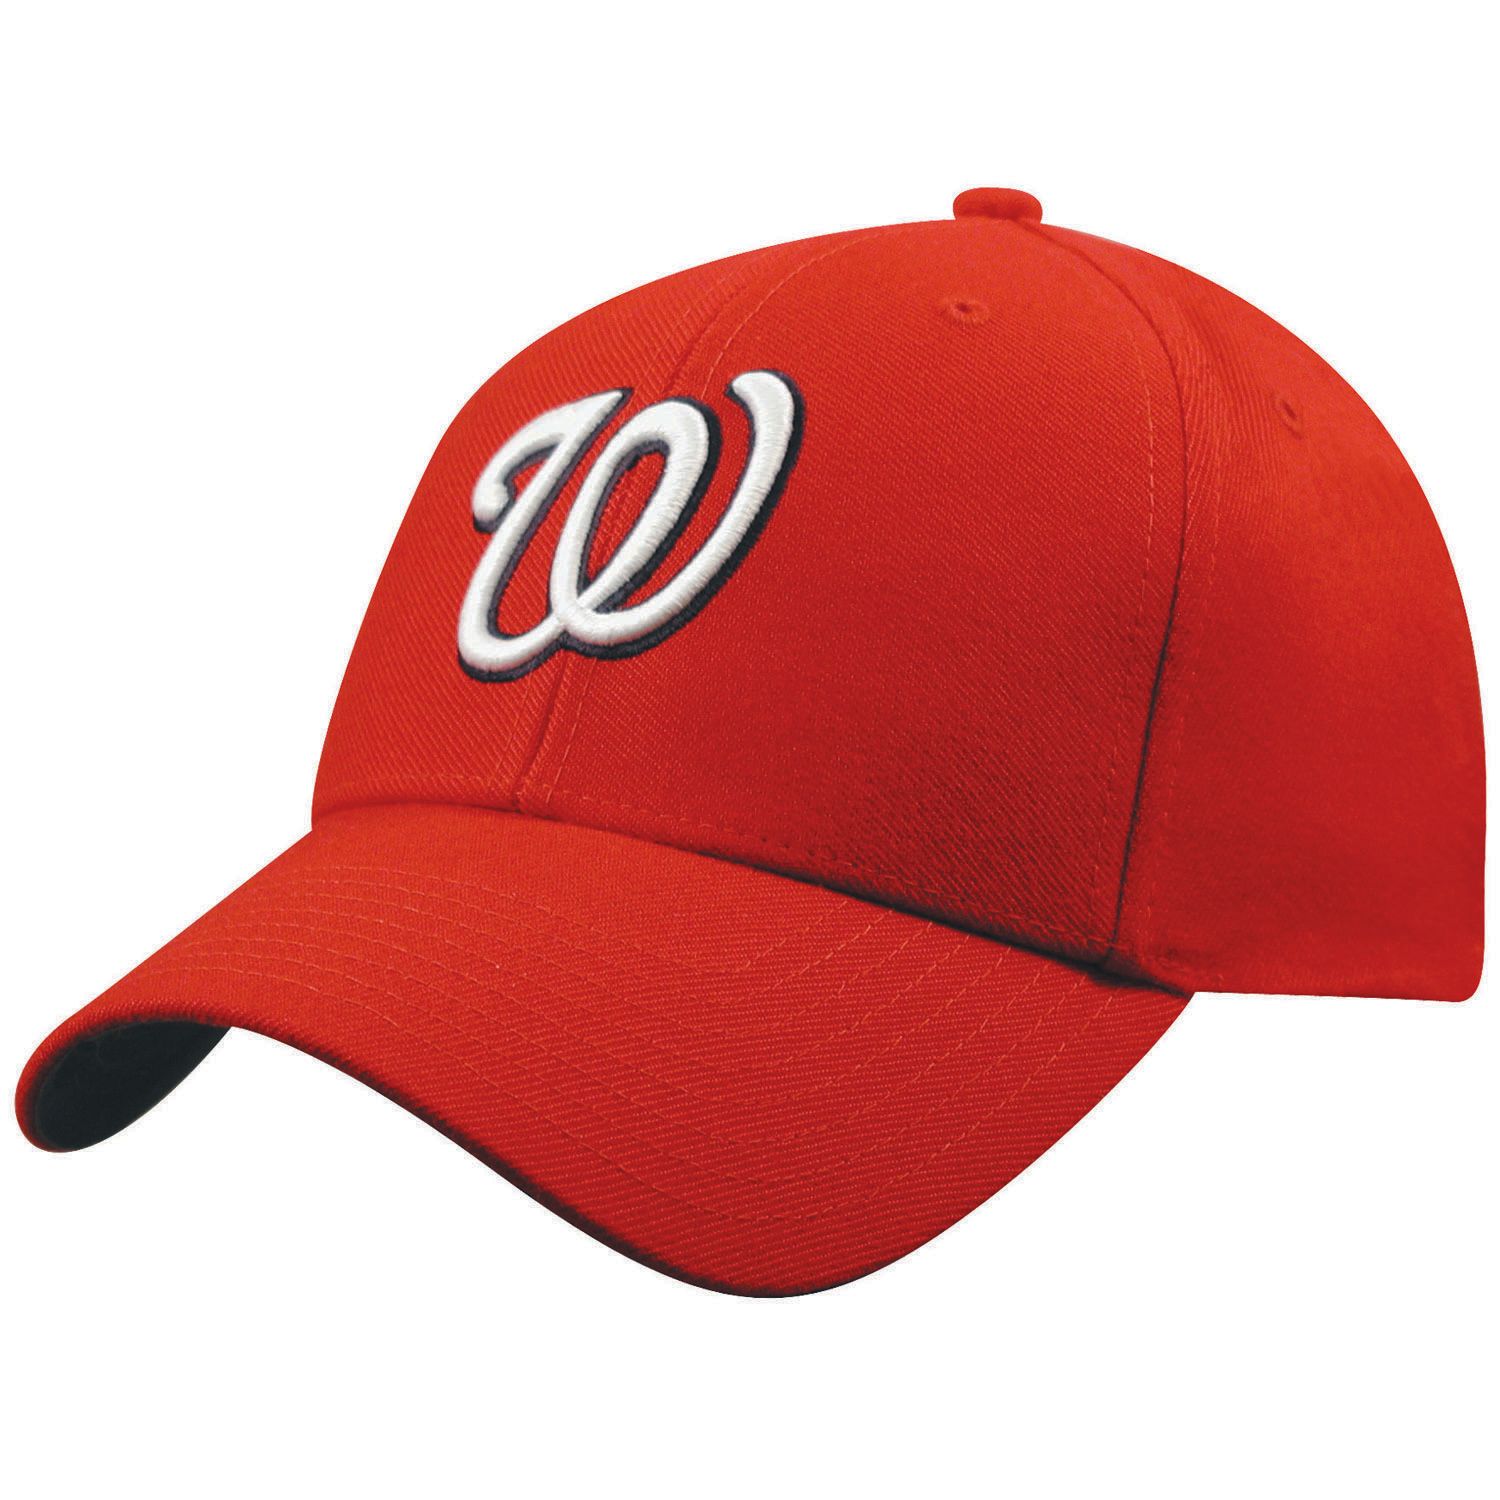 washington nationals baseball cap